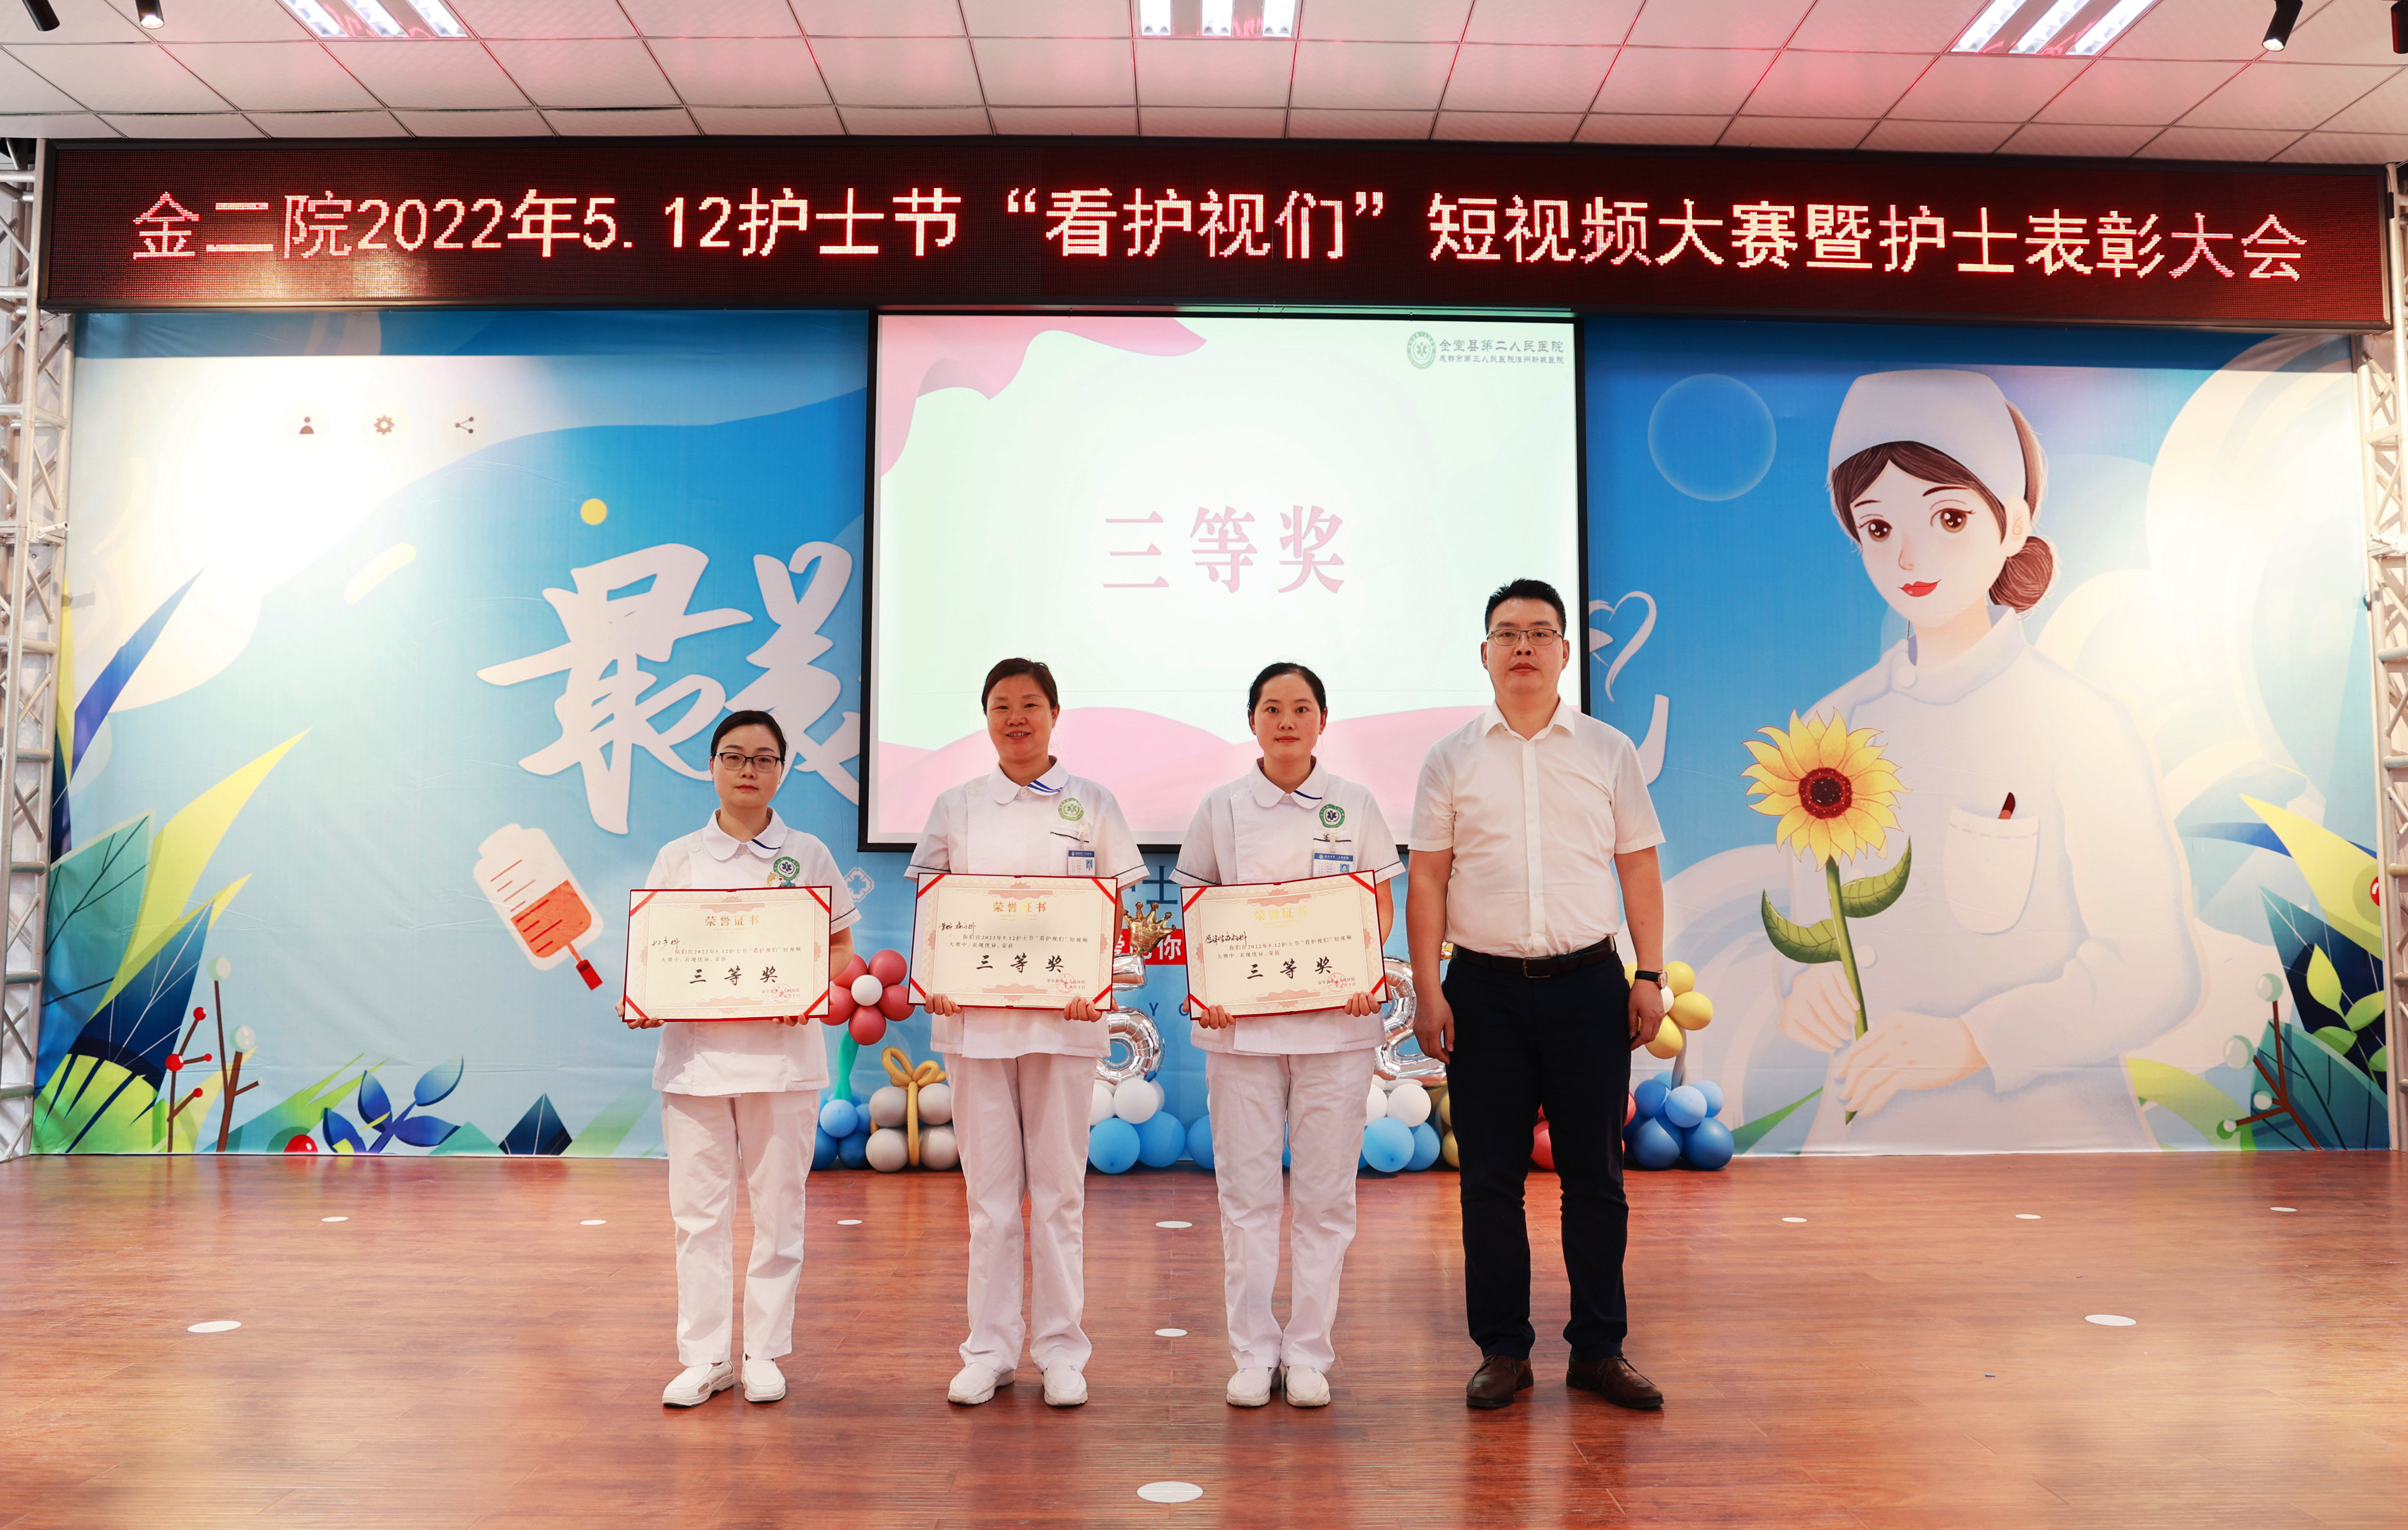 金堂二医院举办5.12国际护士节“看护视们”短视频大赛暨颁奖活动